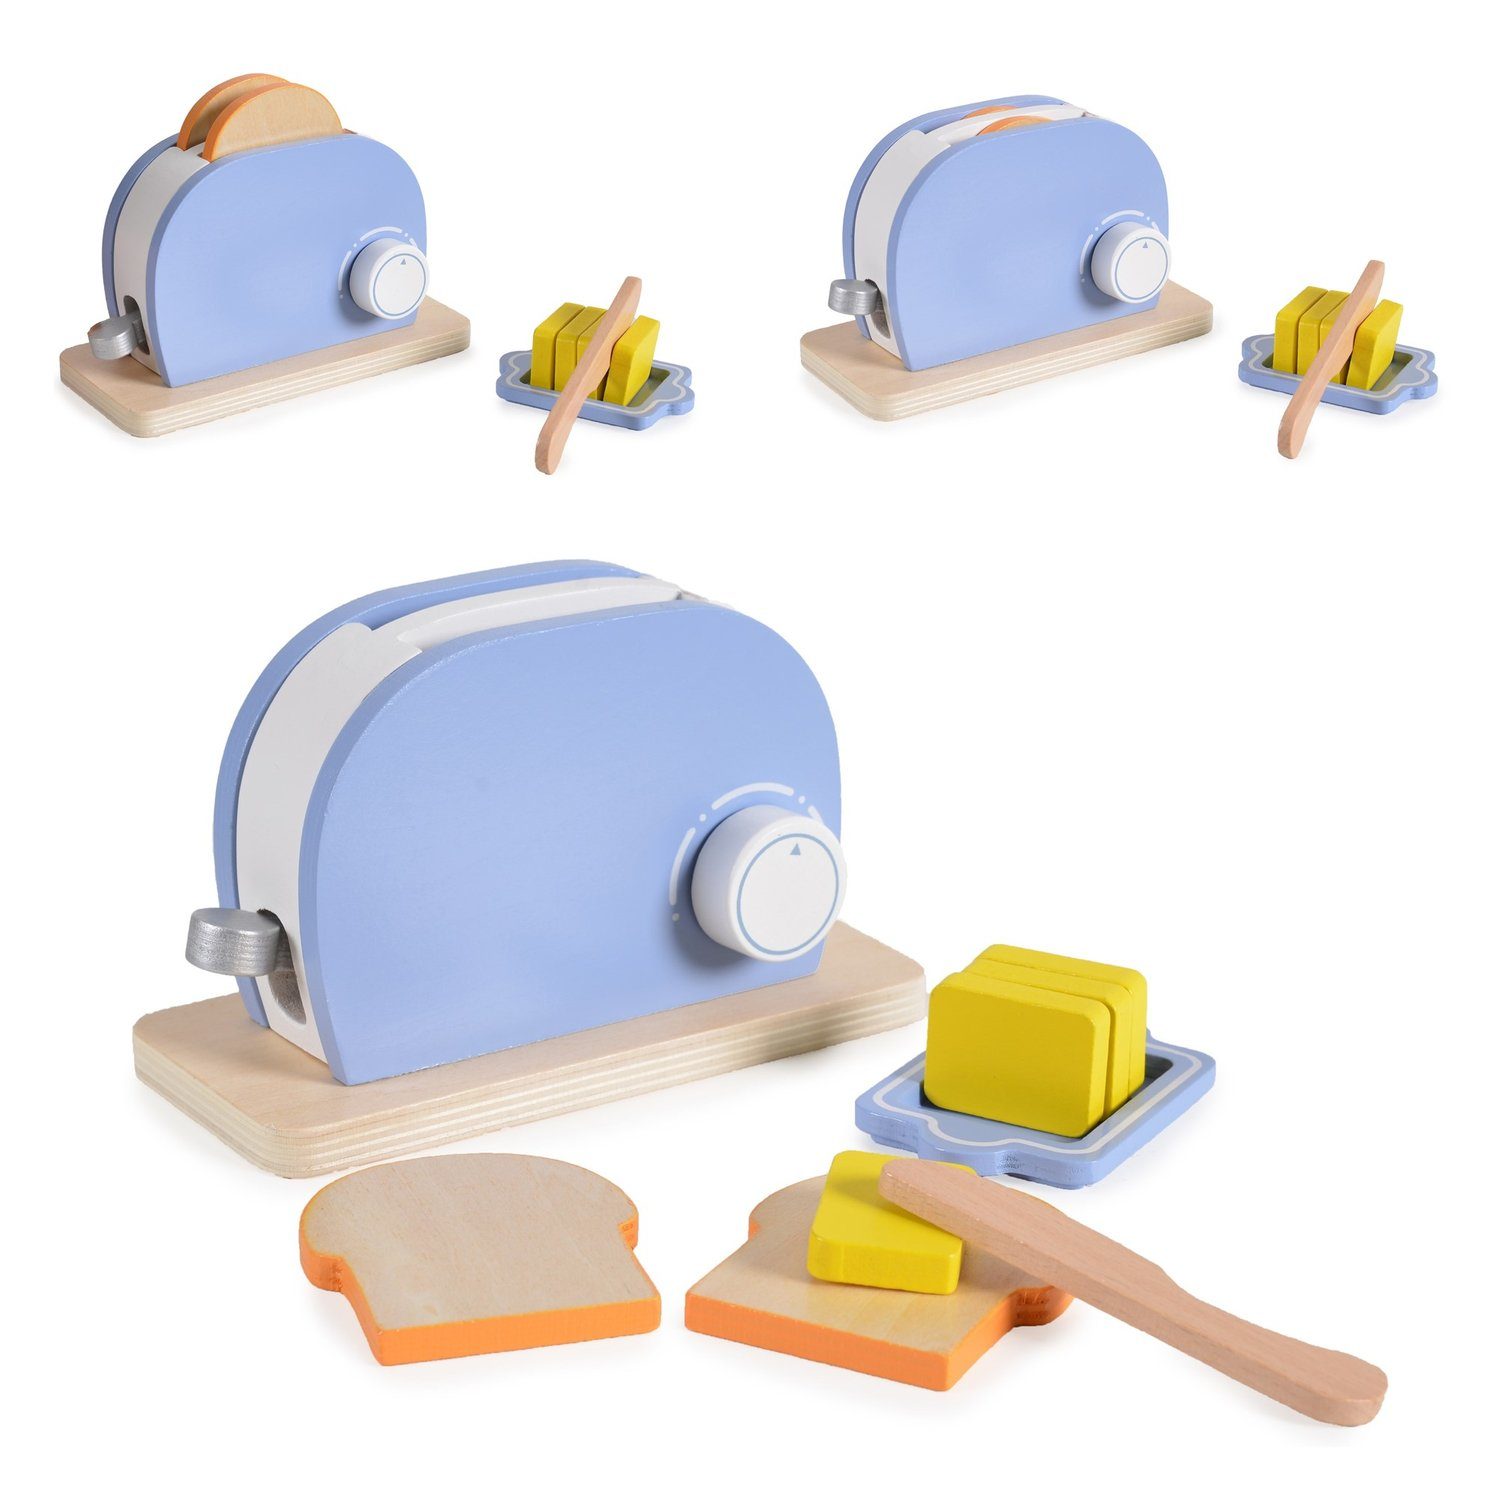 Moni Kinder-Toaster Spielzeug Toaster 4341 Set, Holz, Drehknopf, Butter, Messer, Toastscheiben